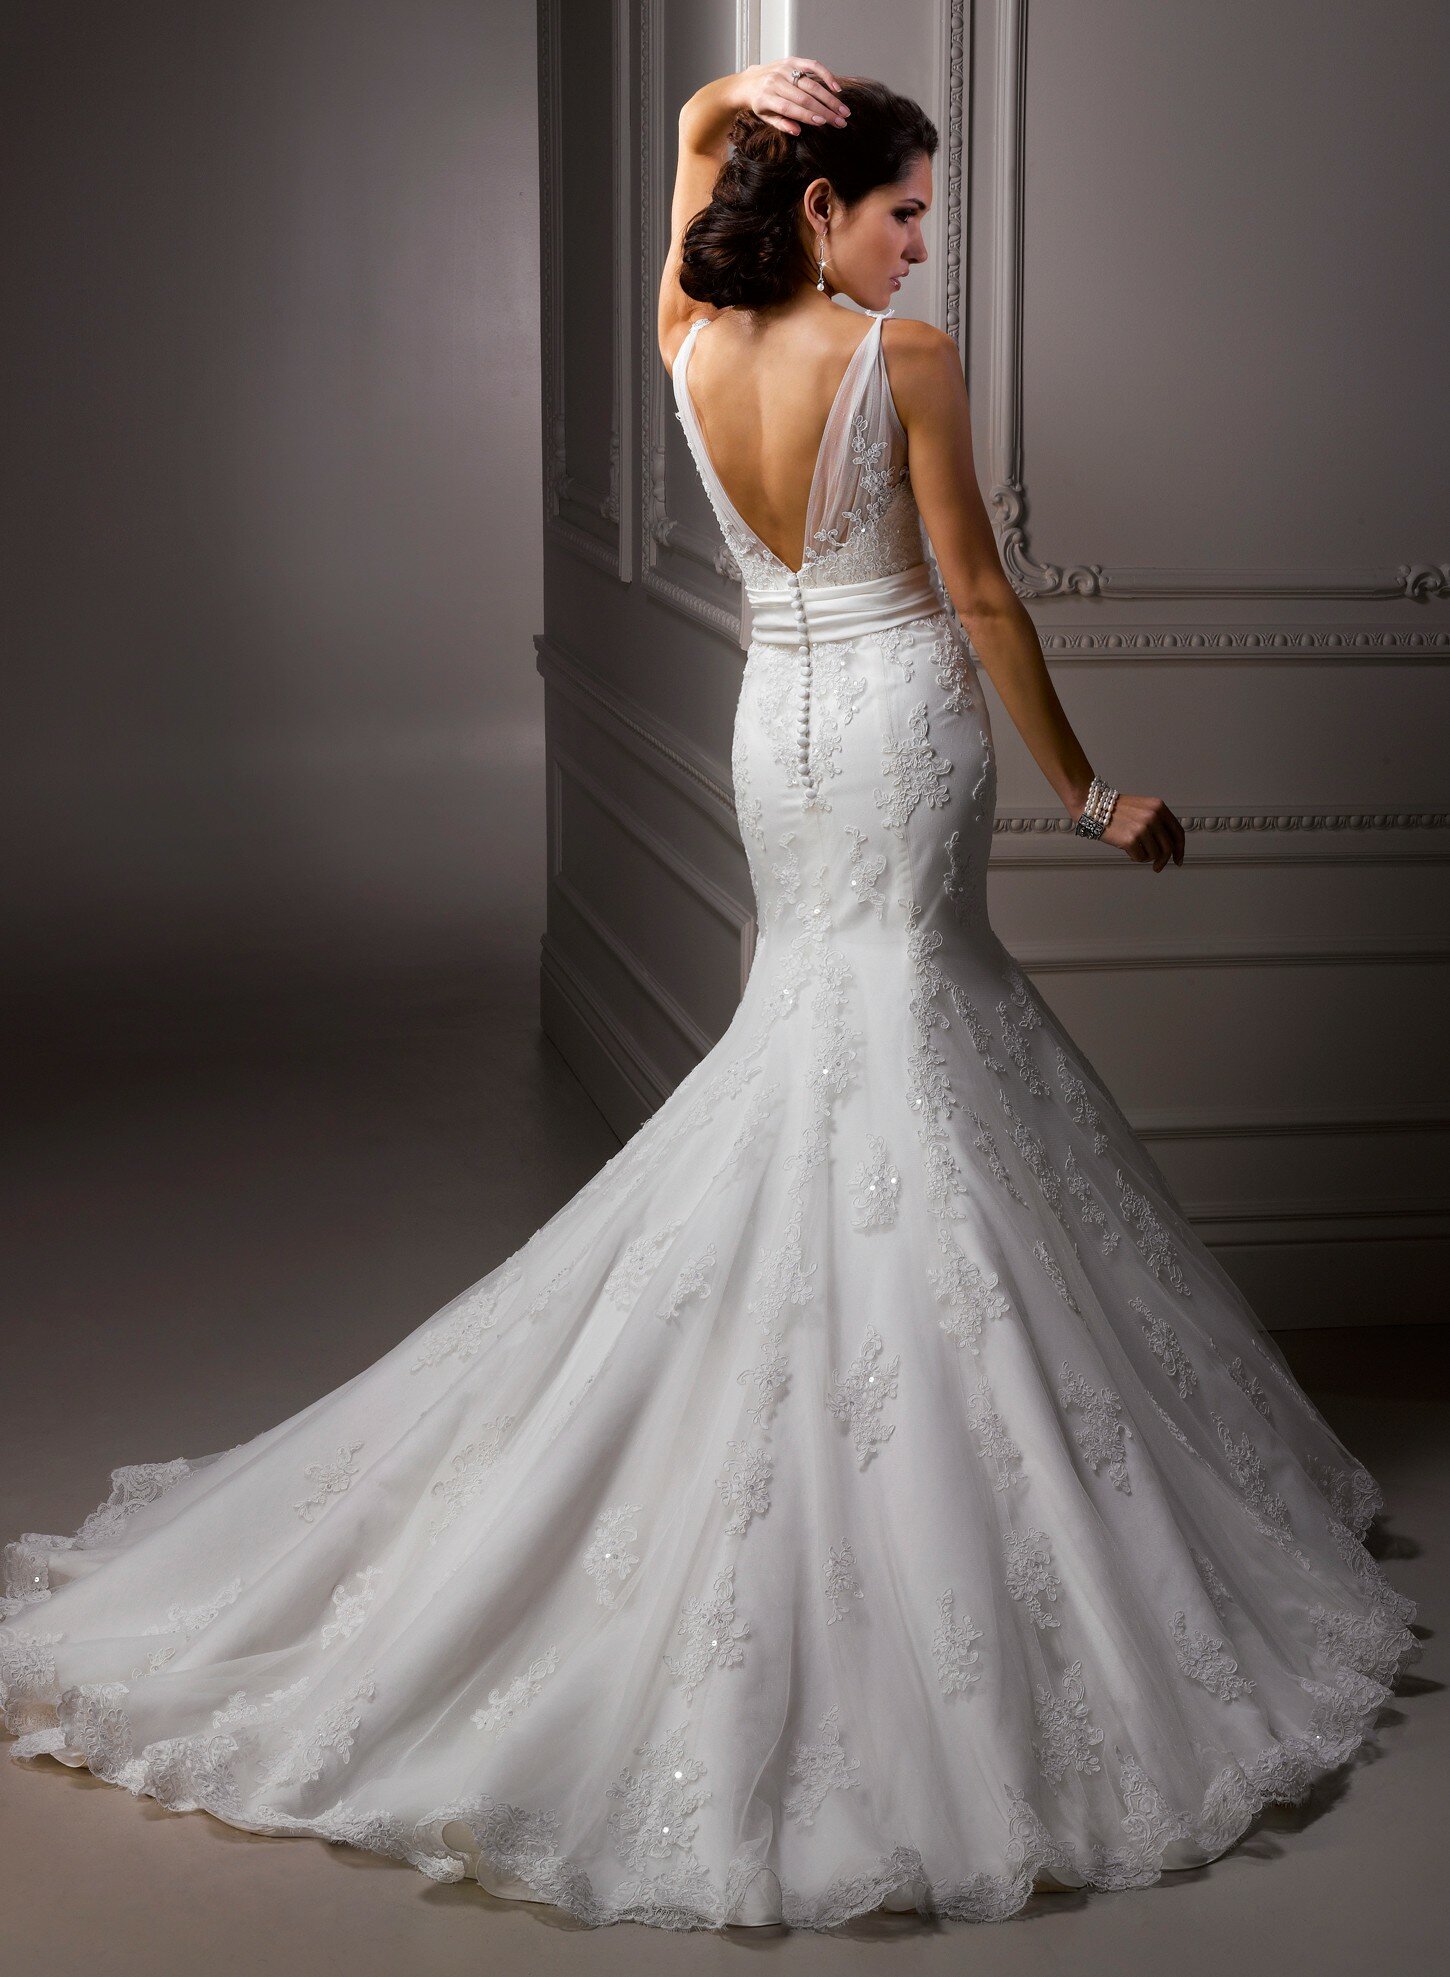 Amazing lace wedding dresses Photo - 3